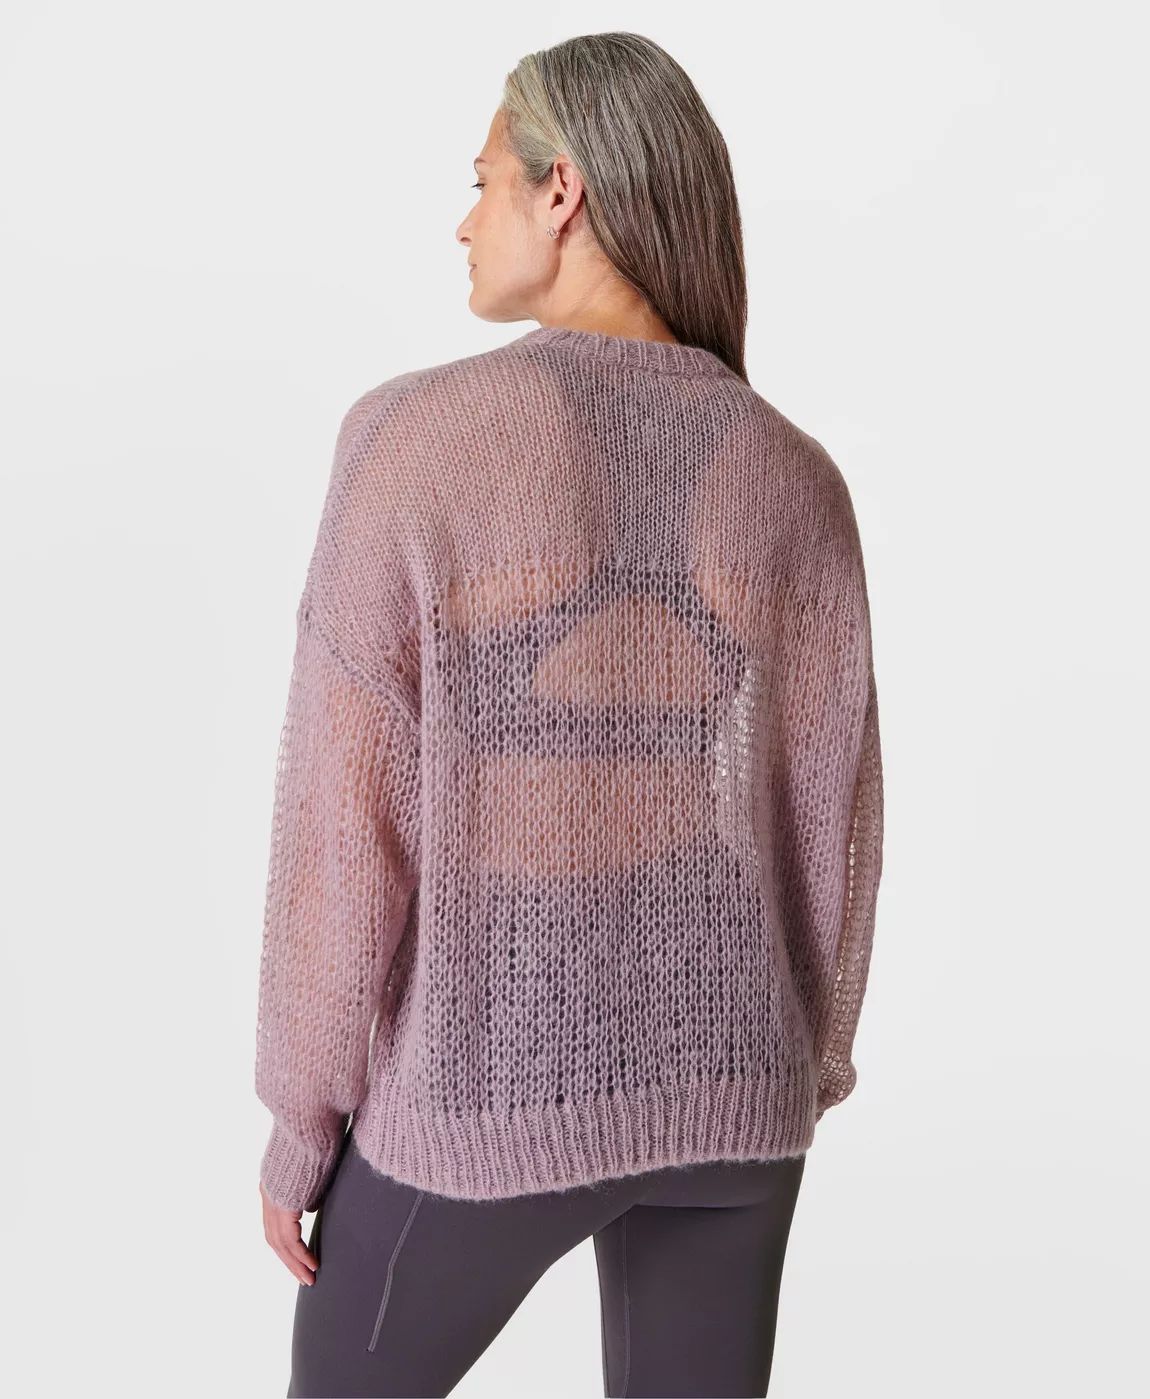 Open Weave Sweater | Sweaty Betty UK